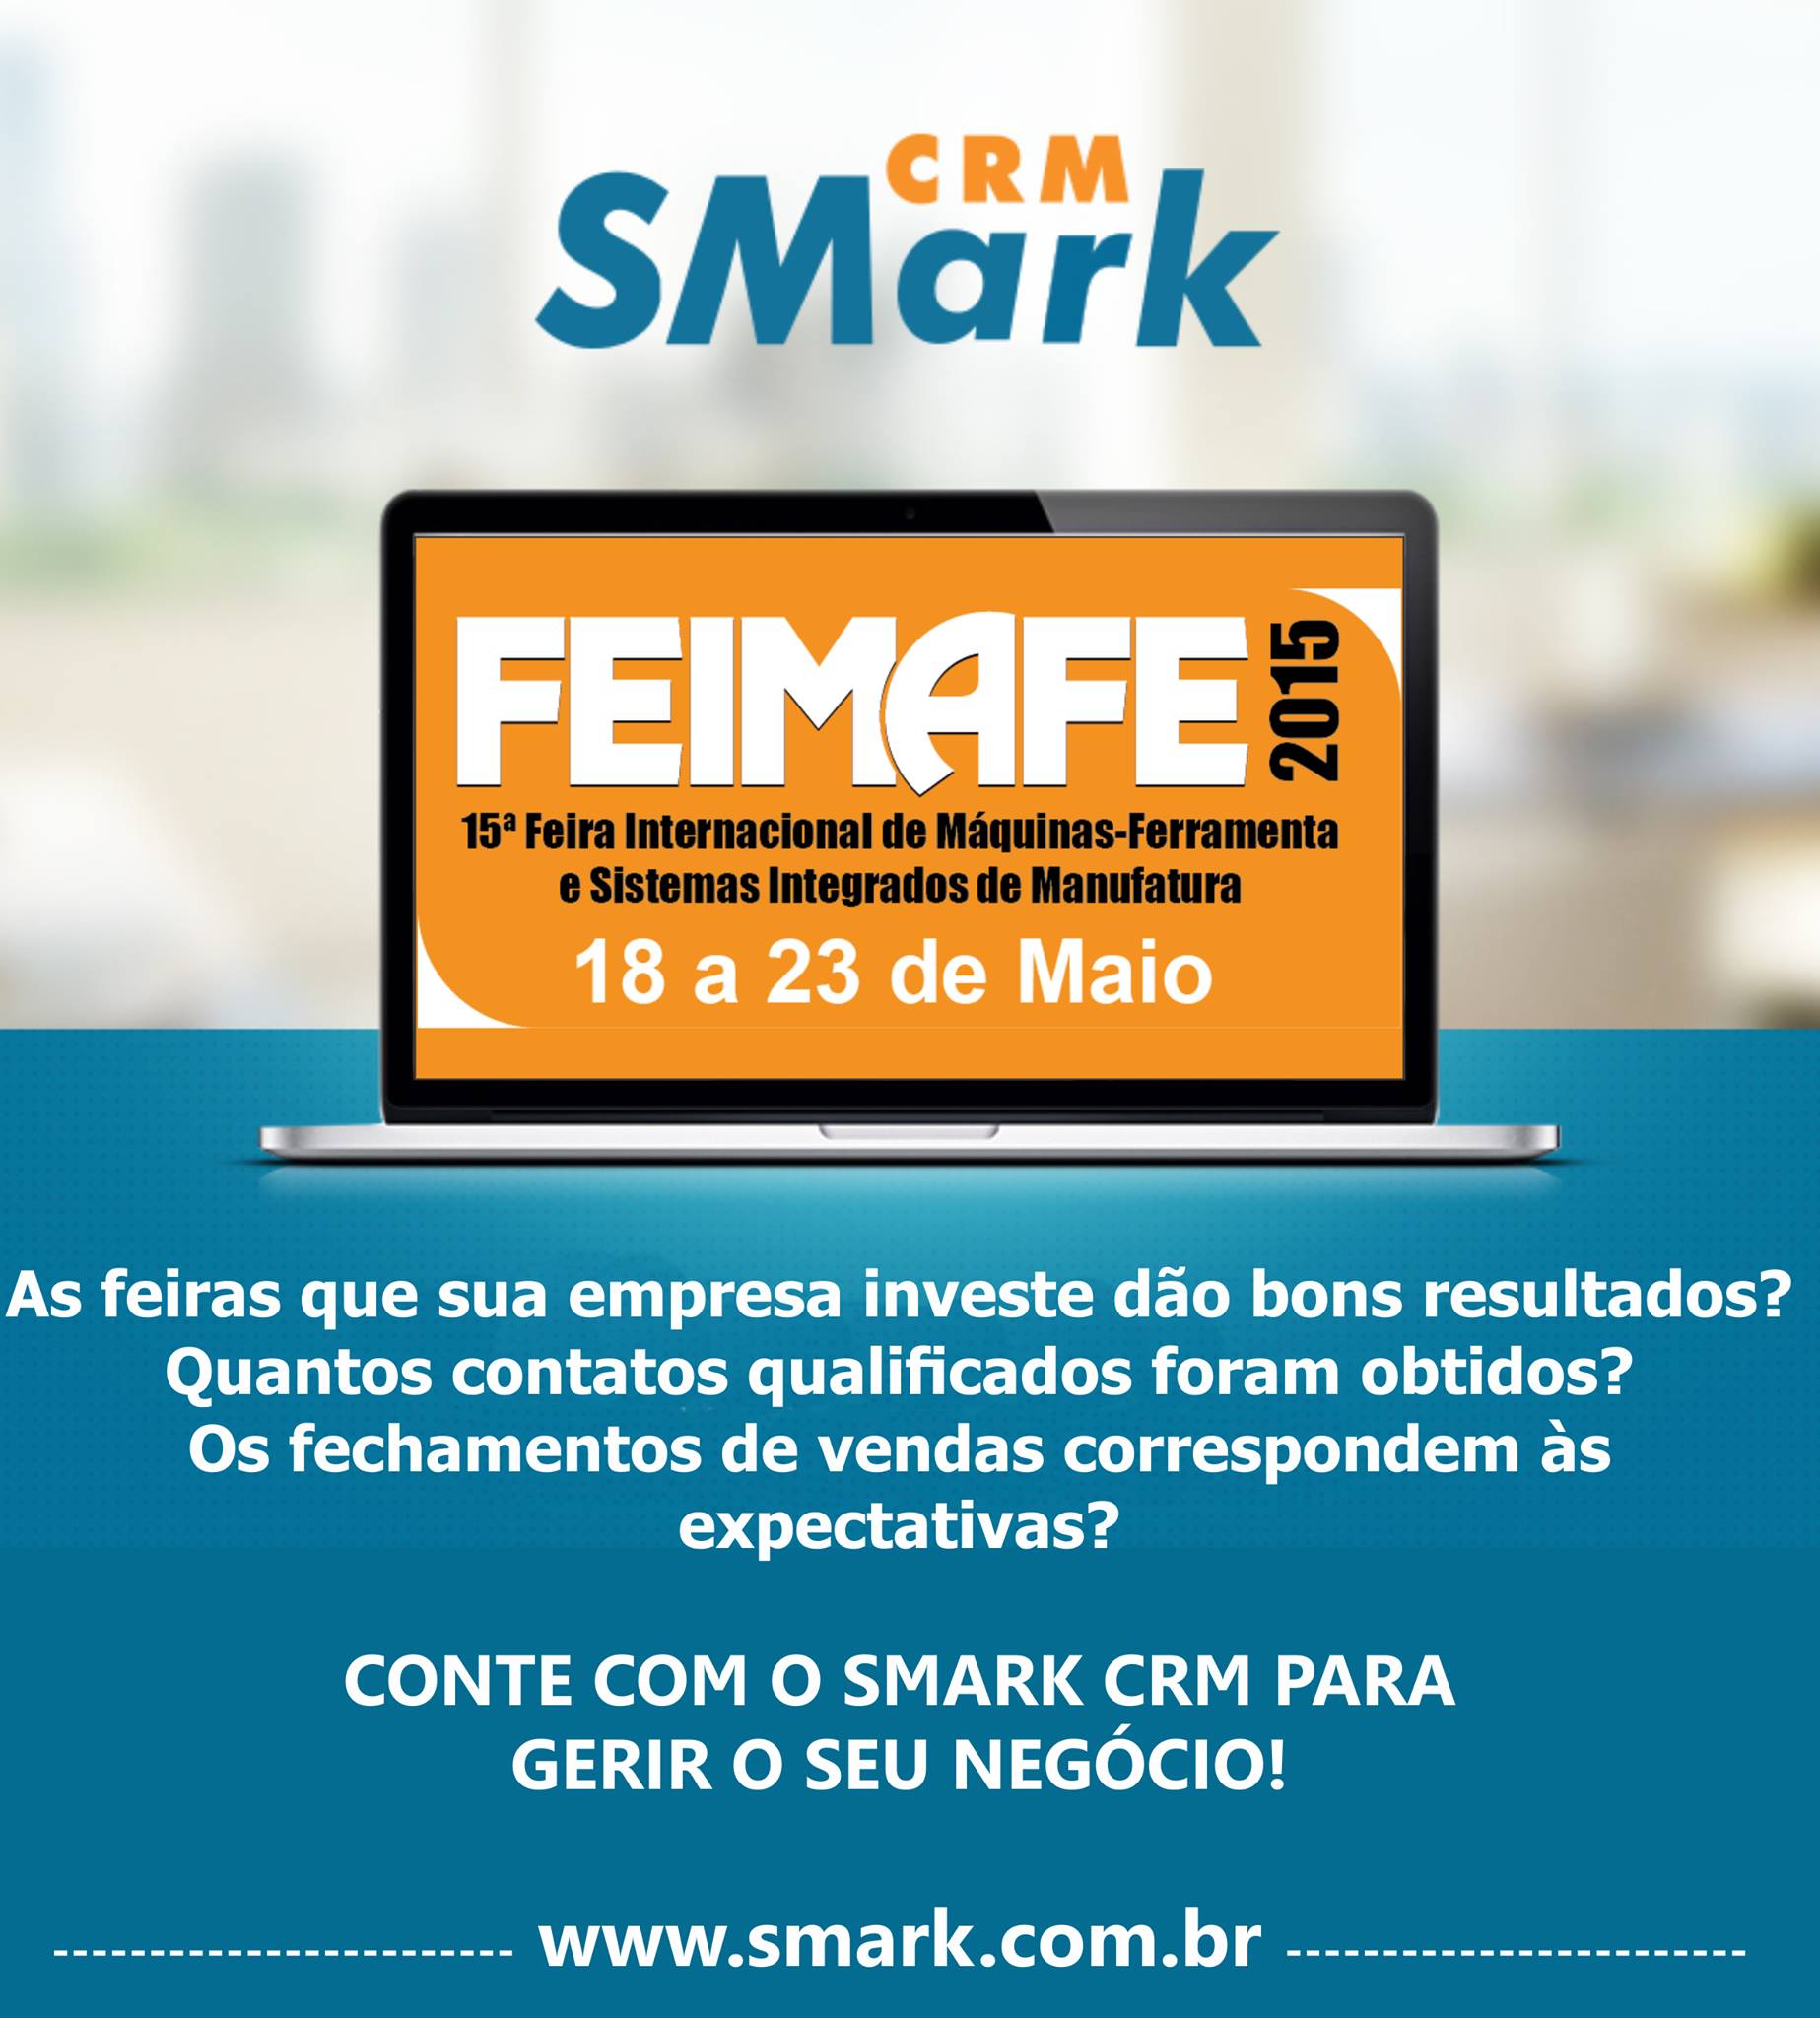 Feira FEIMAFE - Smark CRM